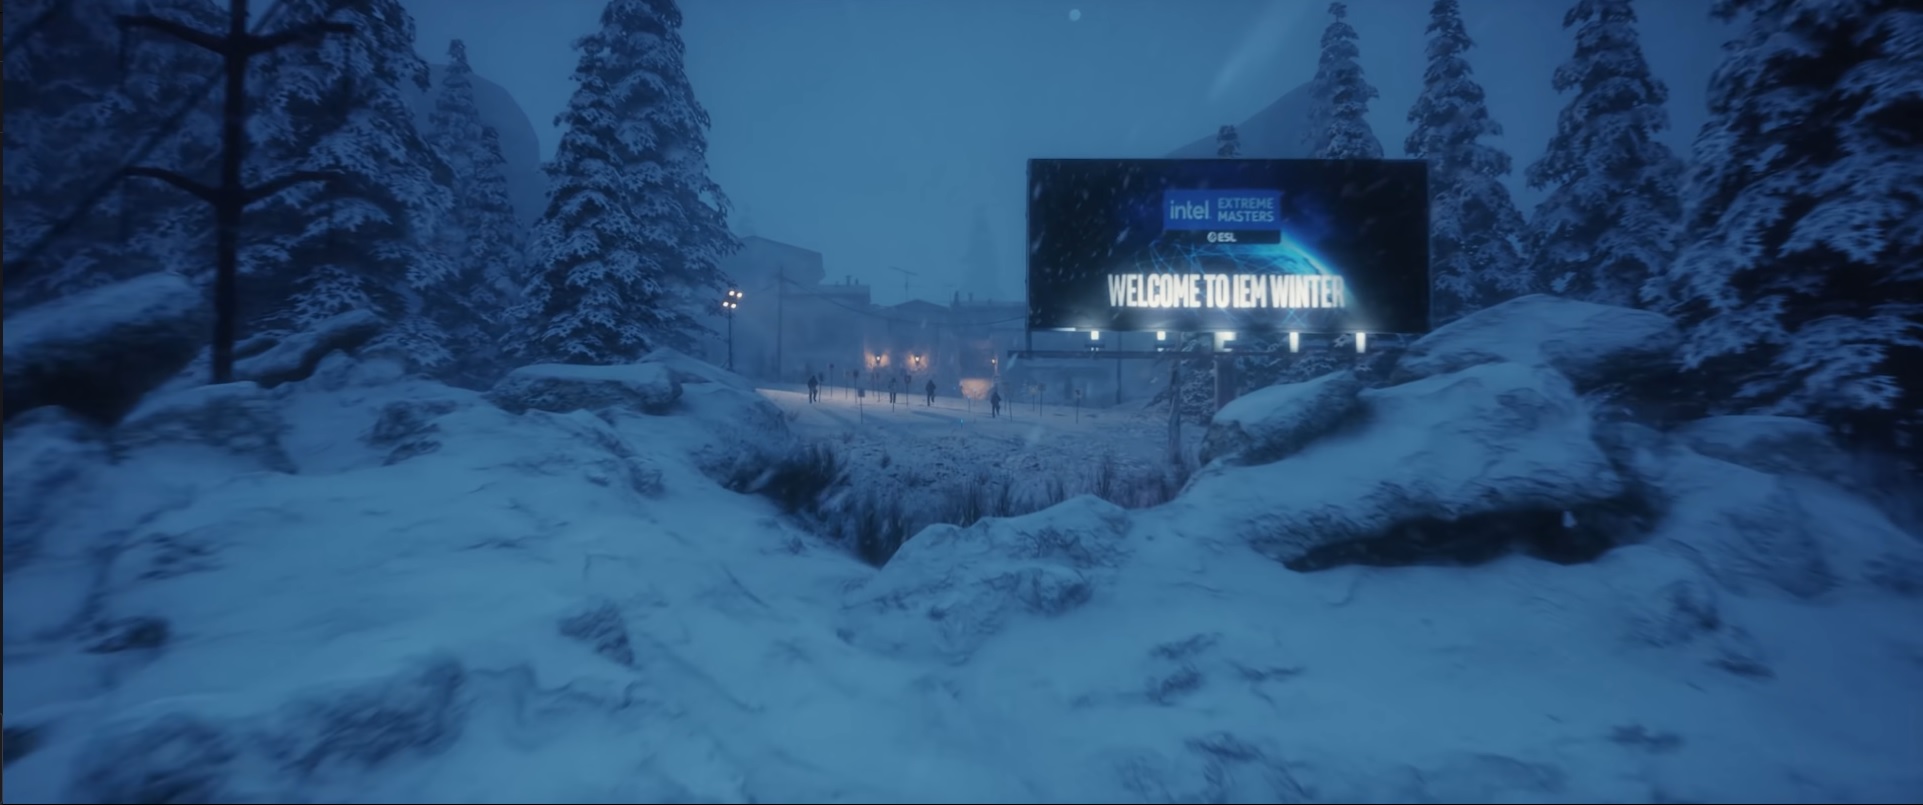 VIDEO: ESL představilo trailer na IEM Winter 2021. Neuvěřitelné a skvělé, hodnotí fanoušci 